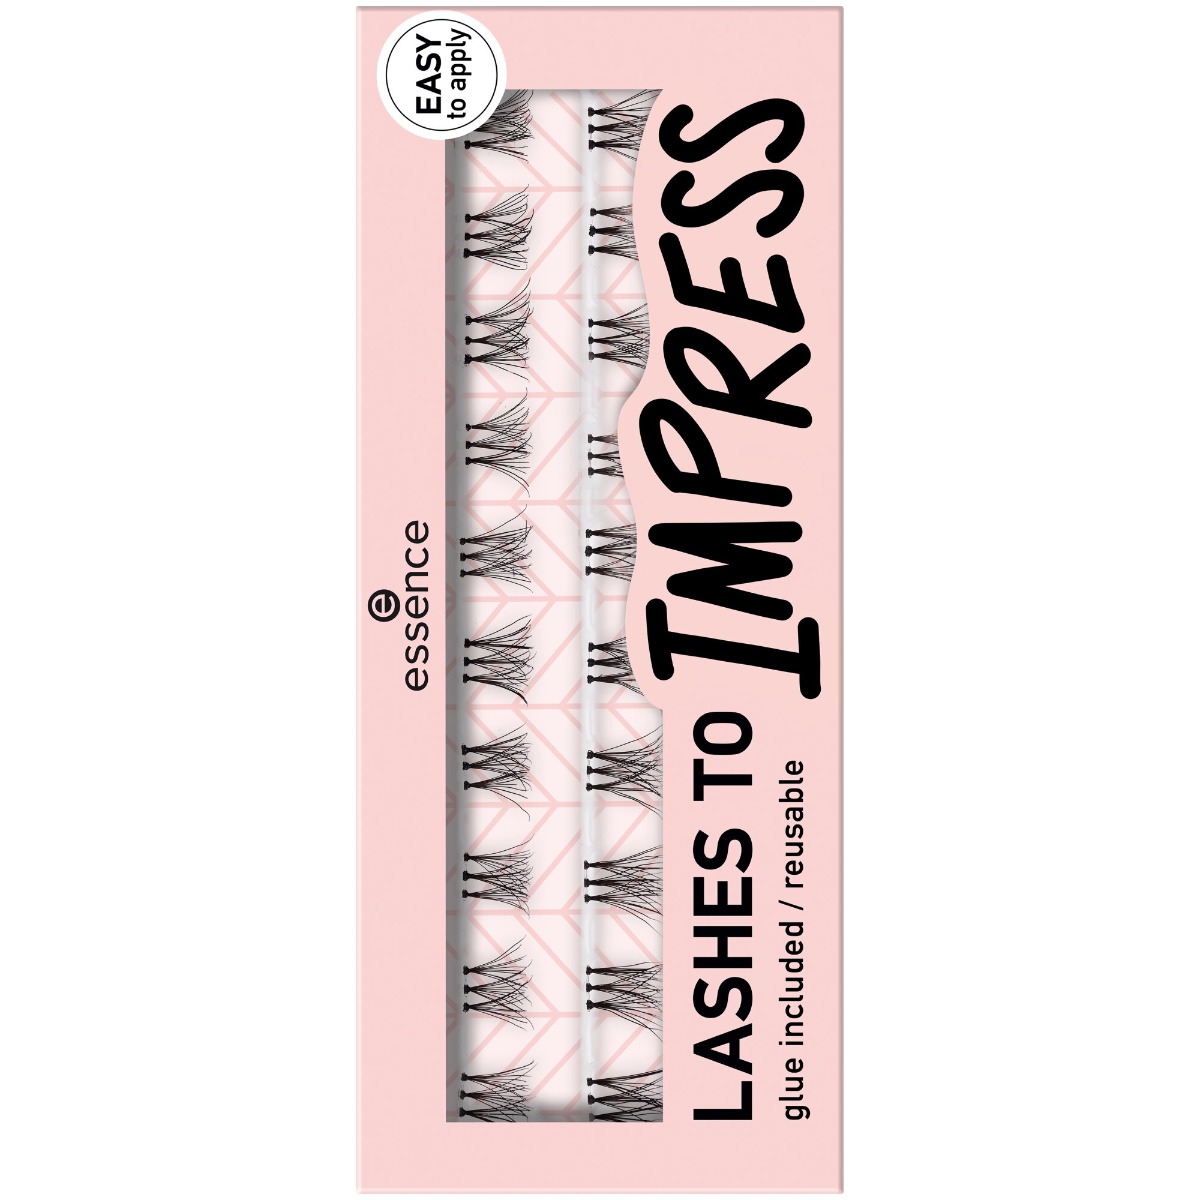 Gene false Lashes To Impress 07 - Bundled single lashes, 20 bucati, Essence